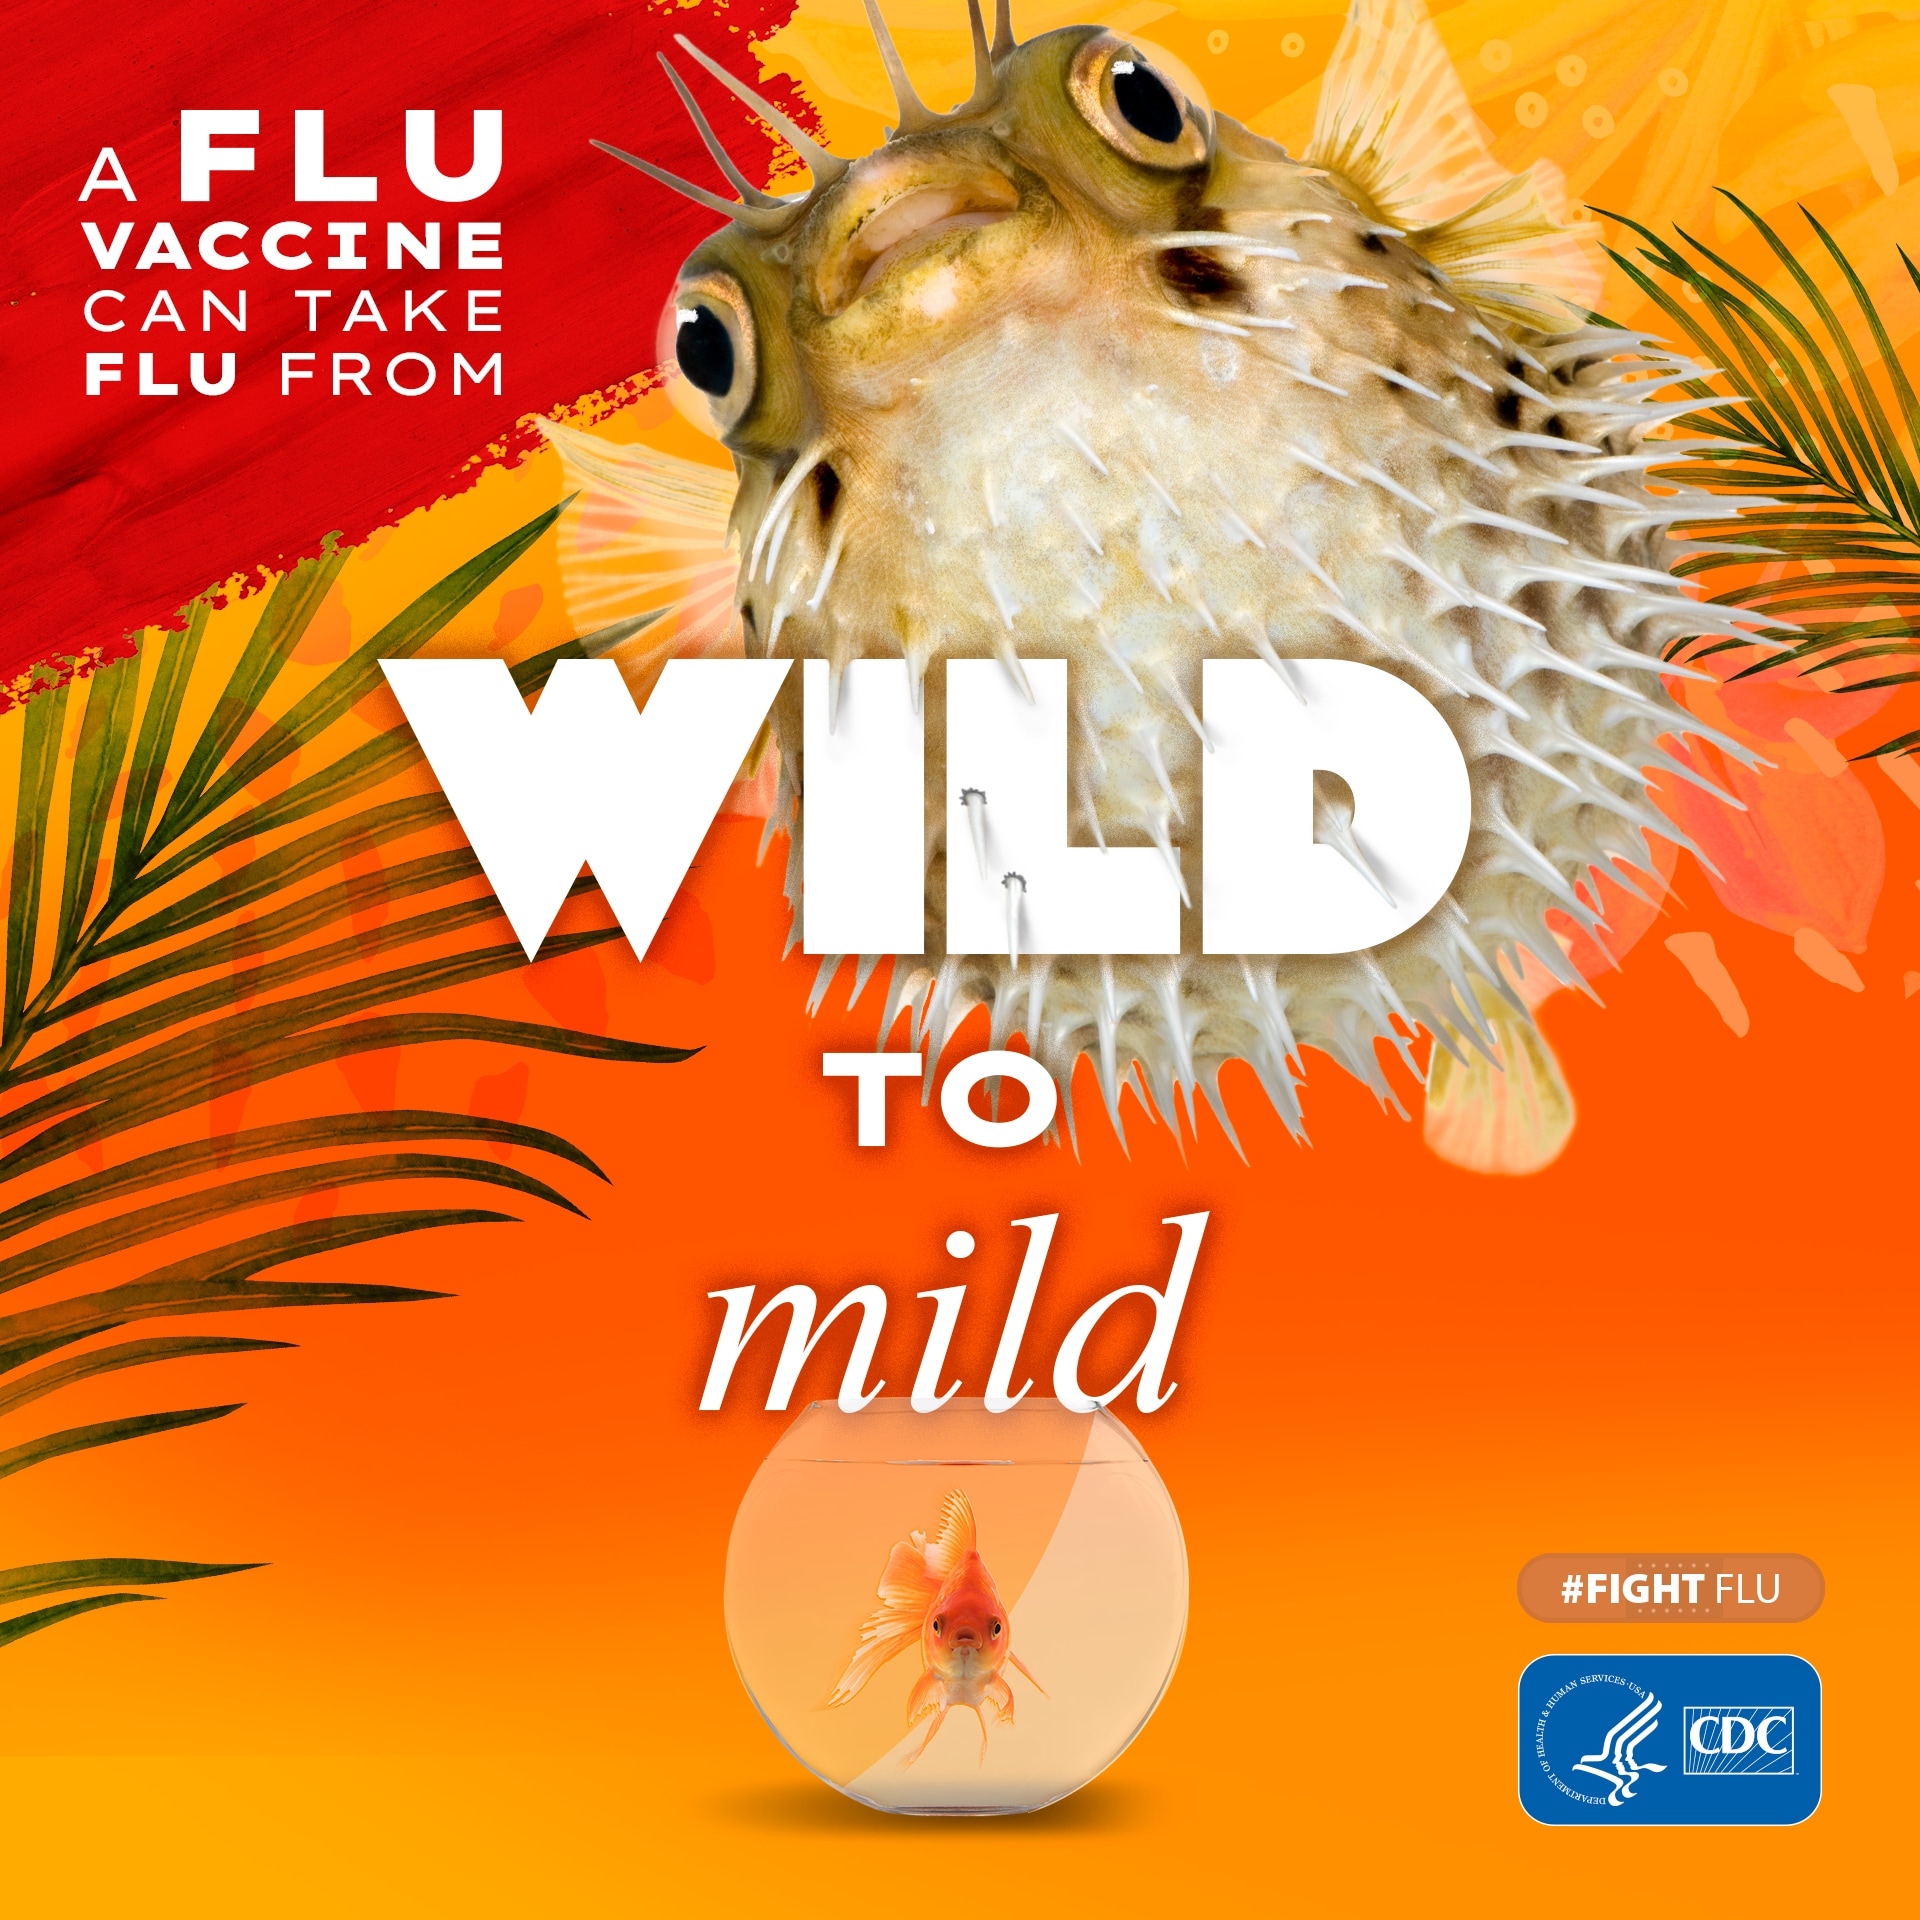 pez globo con el texto: La vacuna contra la influenza puede calmar a la bestia #CombateLaInfluenza Logotipo de los CDC